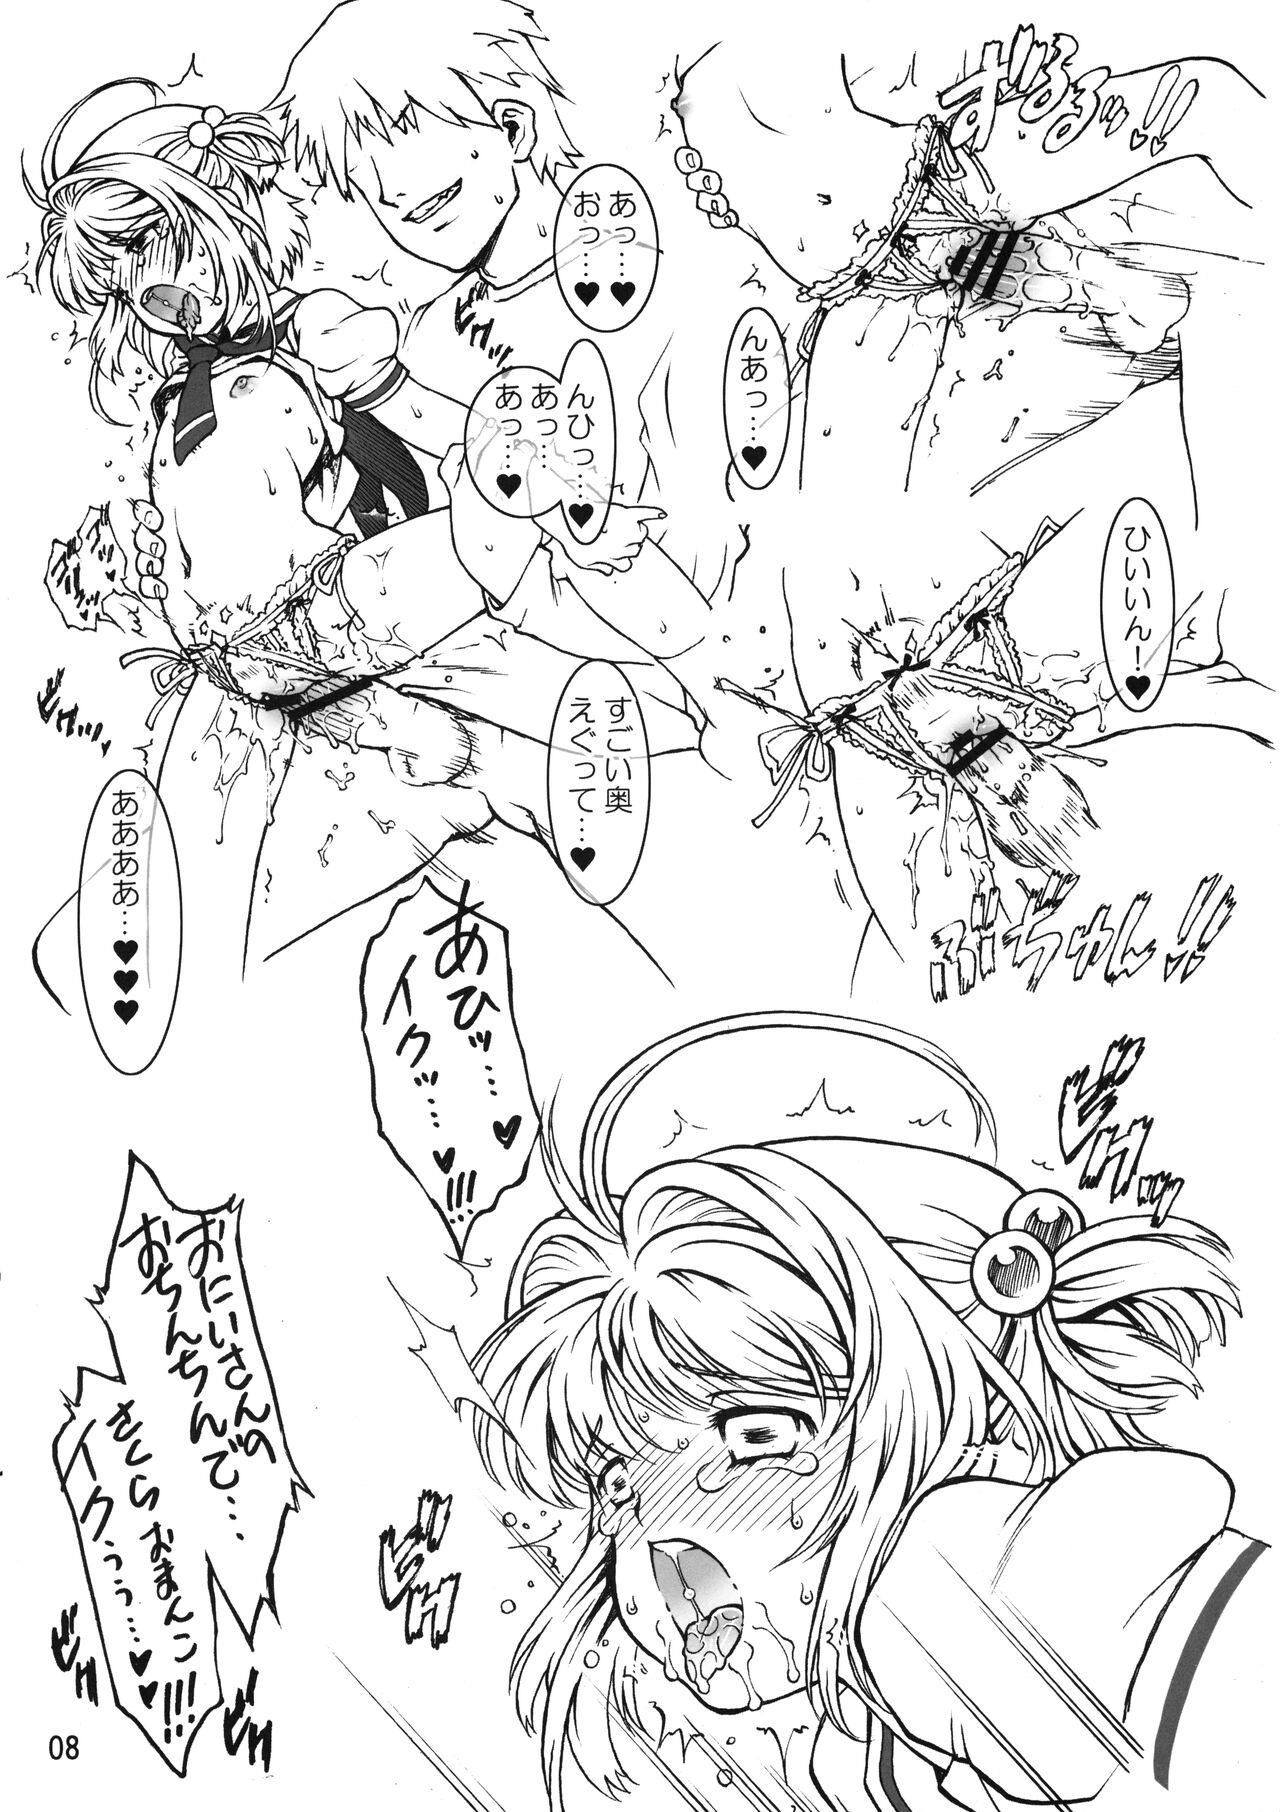 Passivo Mankai Sakura - Cardcaptor sakura Peluda - Page 8